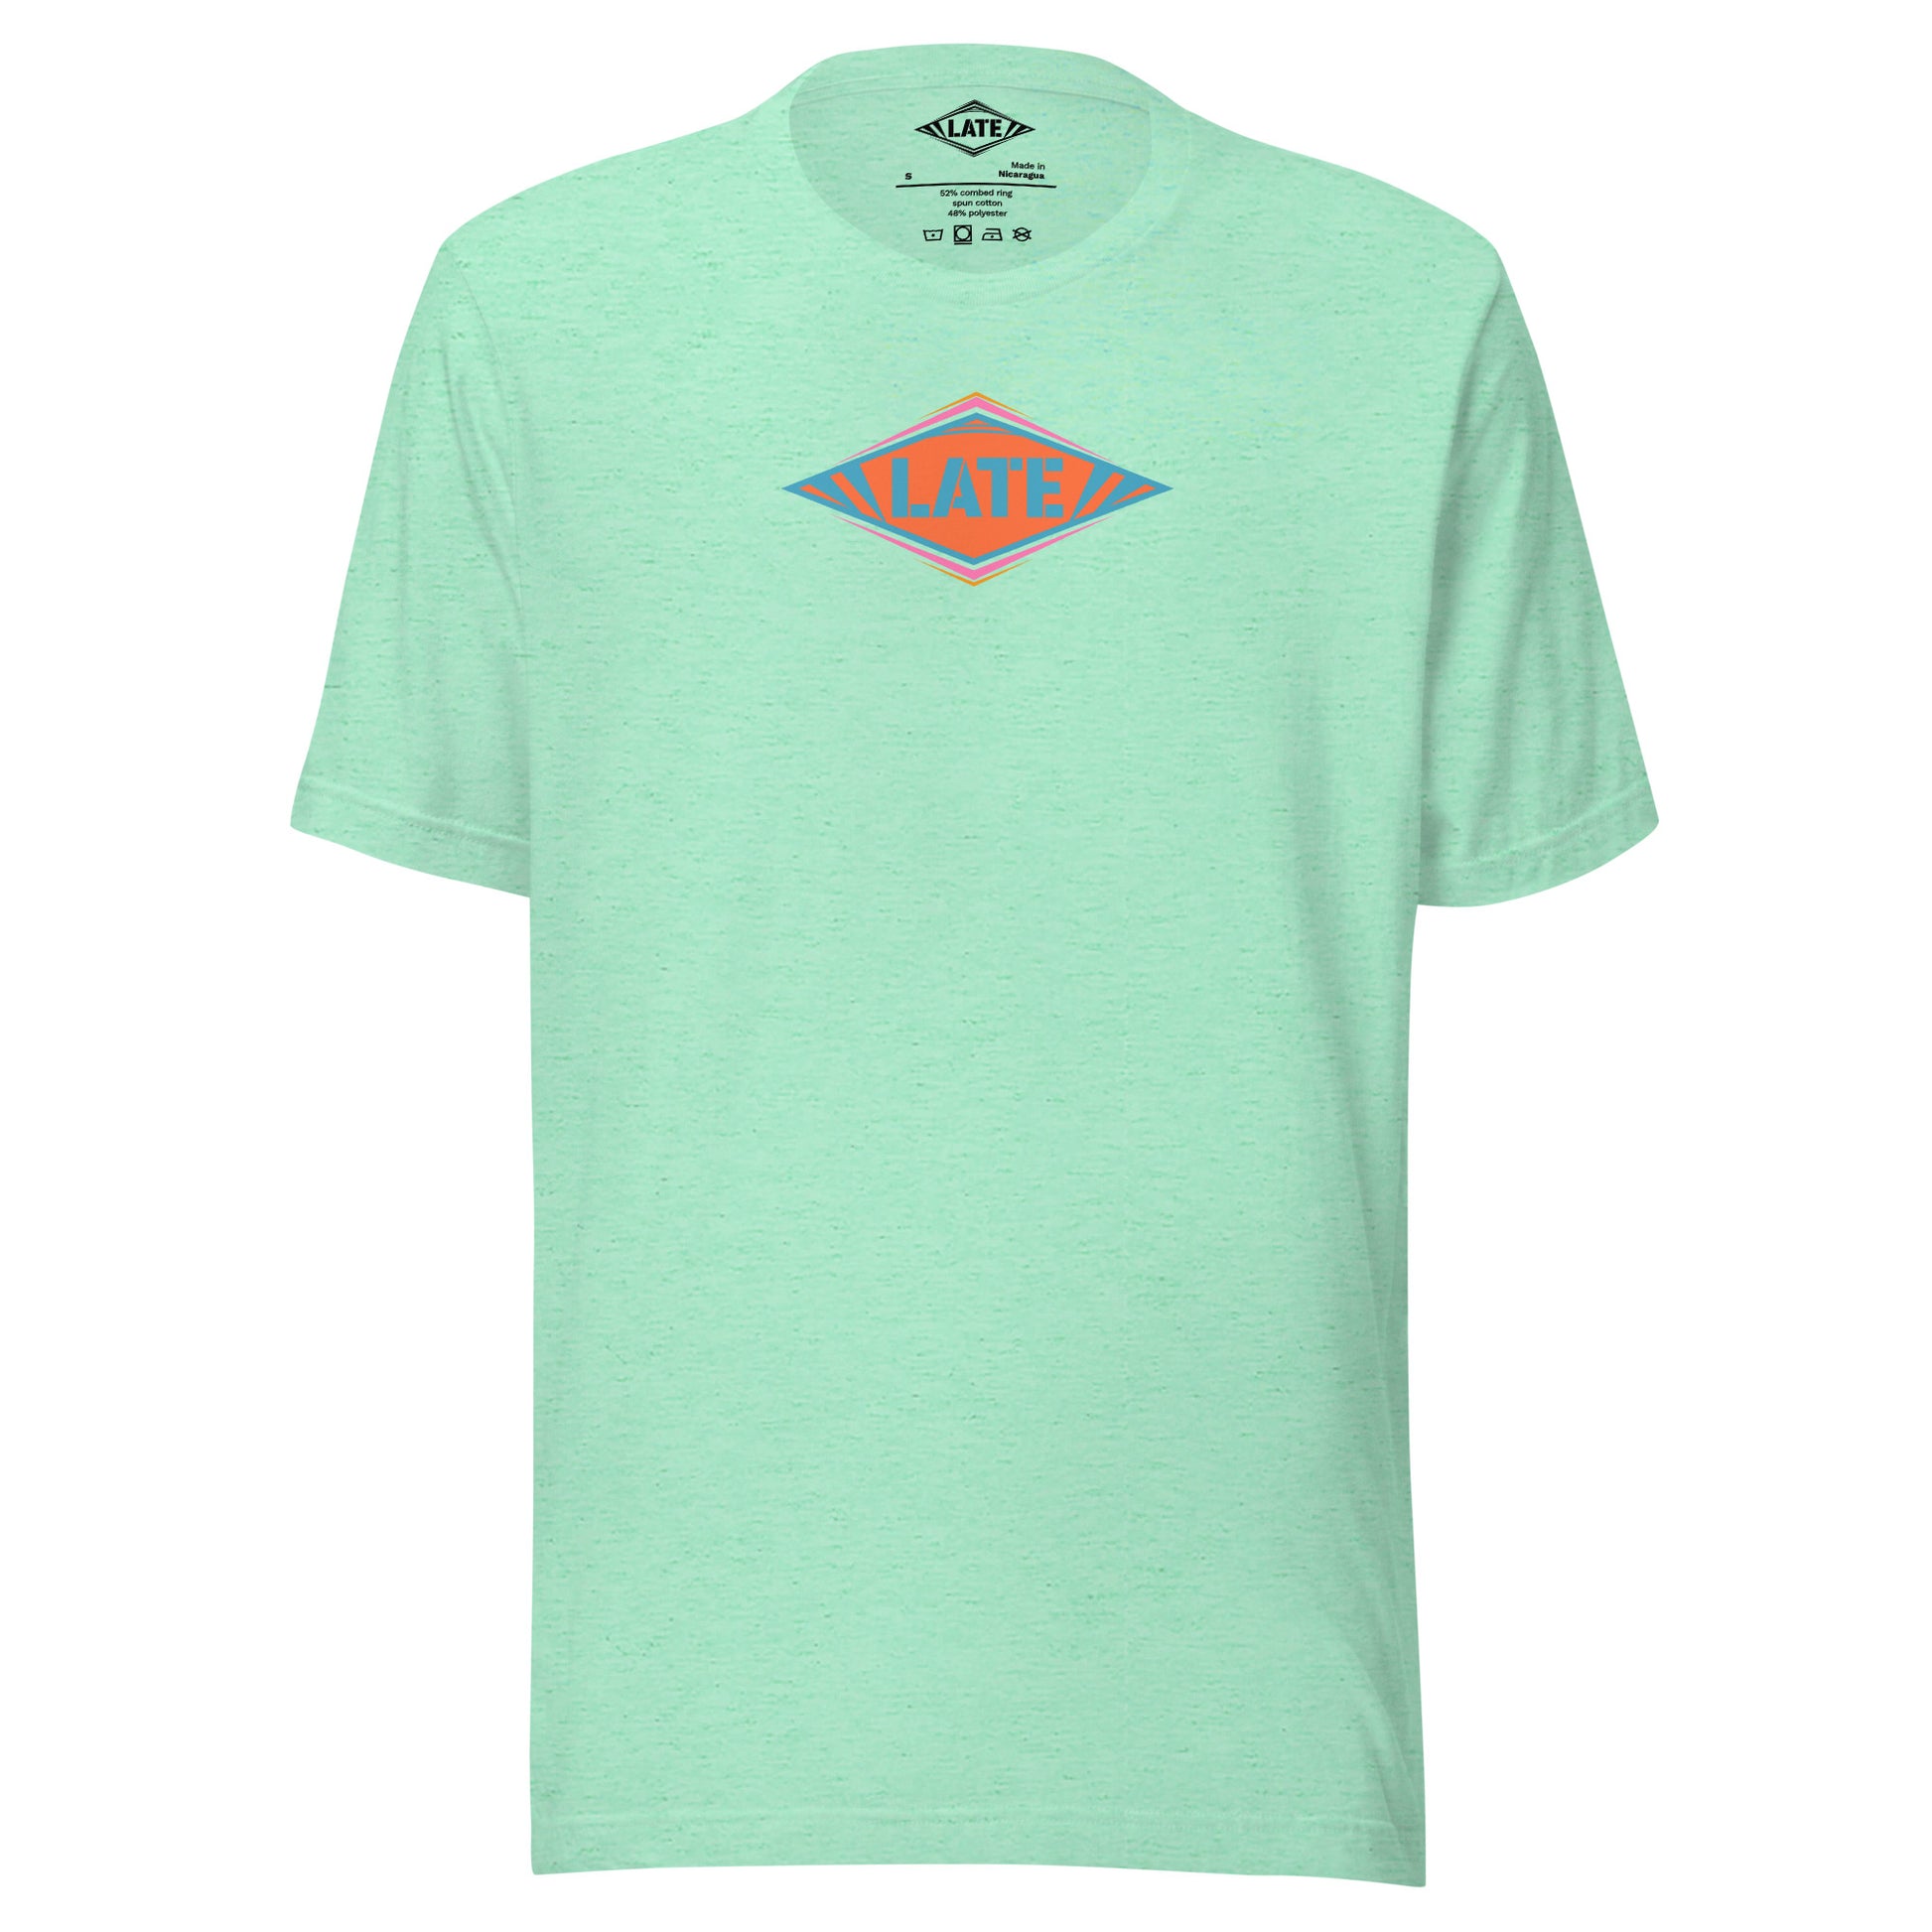 T-Shirt skateboard logo Late coloré bleu orange et violet, t-shirt unisex couleur vert claire